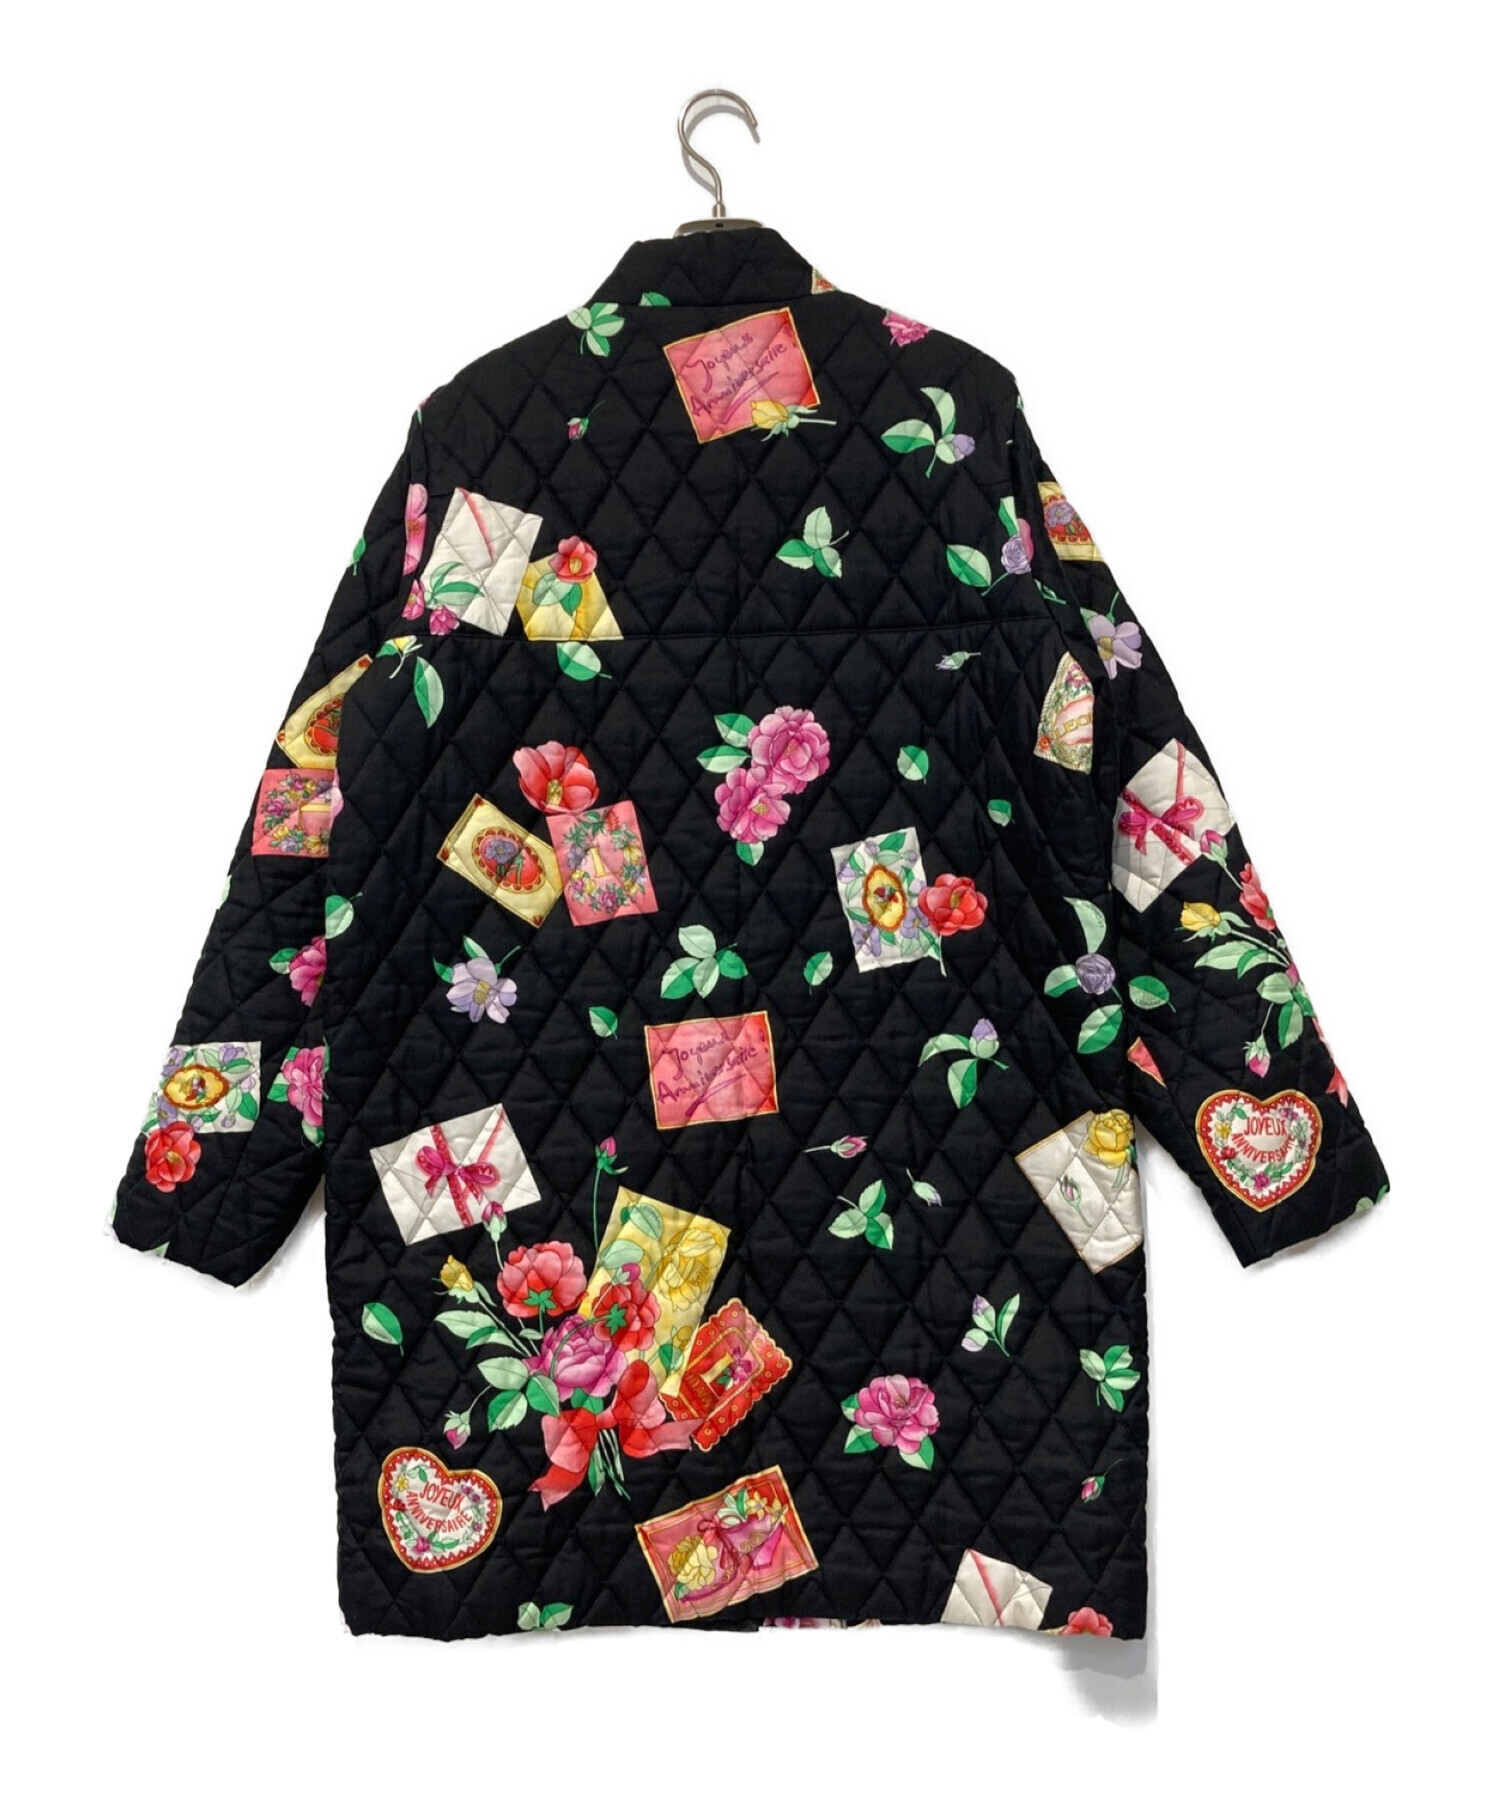 【LEONARD】レオナール 花柄キルティングジャケット